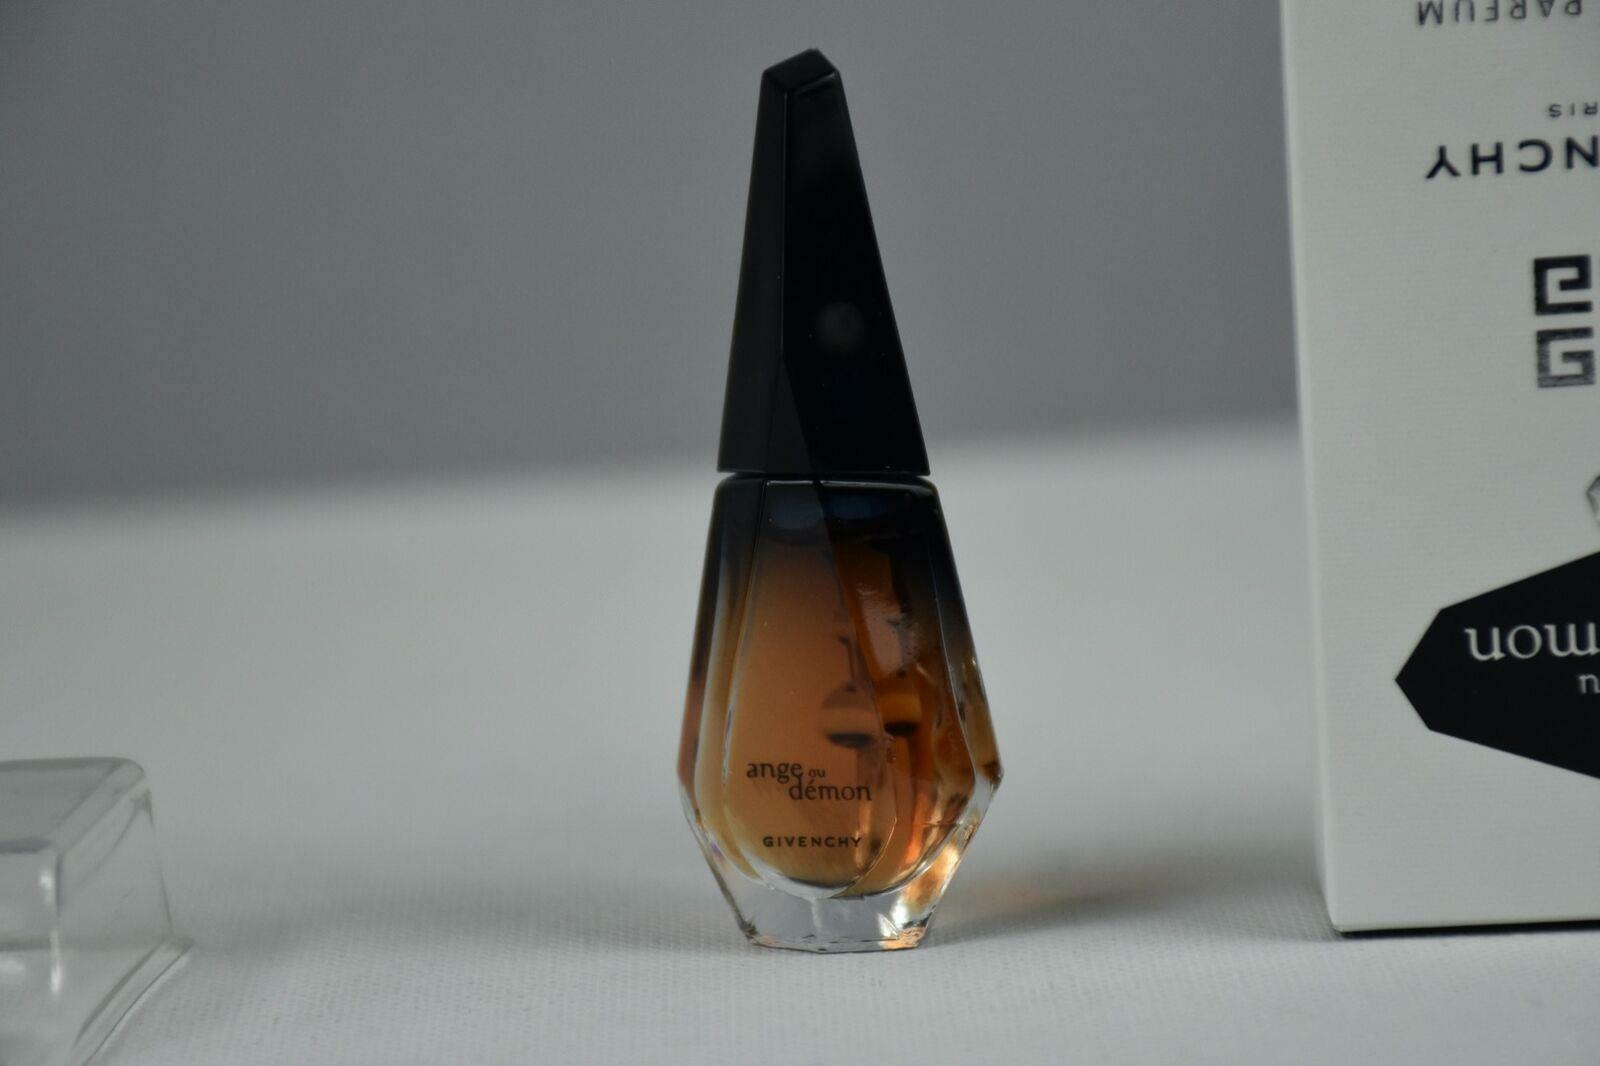 Ange Ou Demon 4 ml Eau De Parfum Givenchy Women By Sale SALE% OFF OFFicial site Miniature NEW